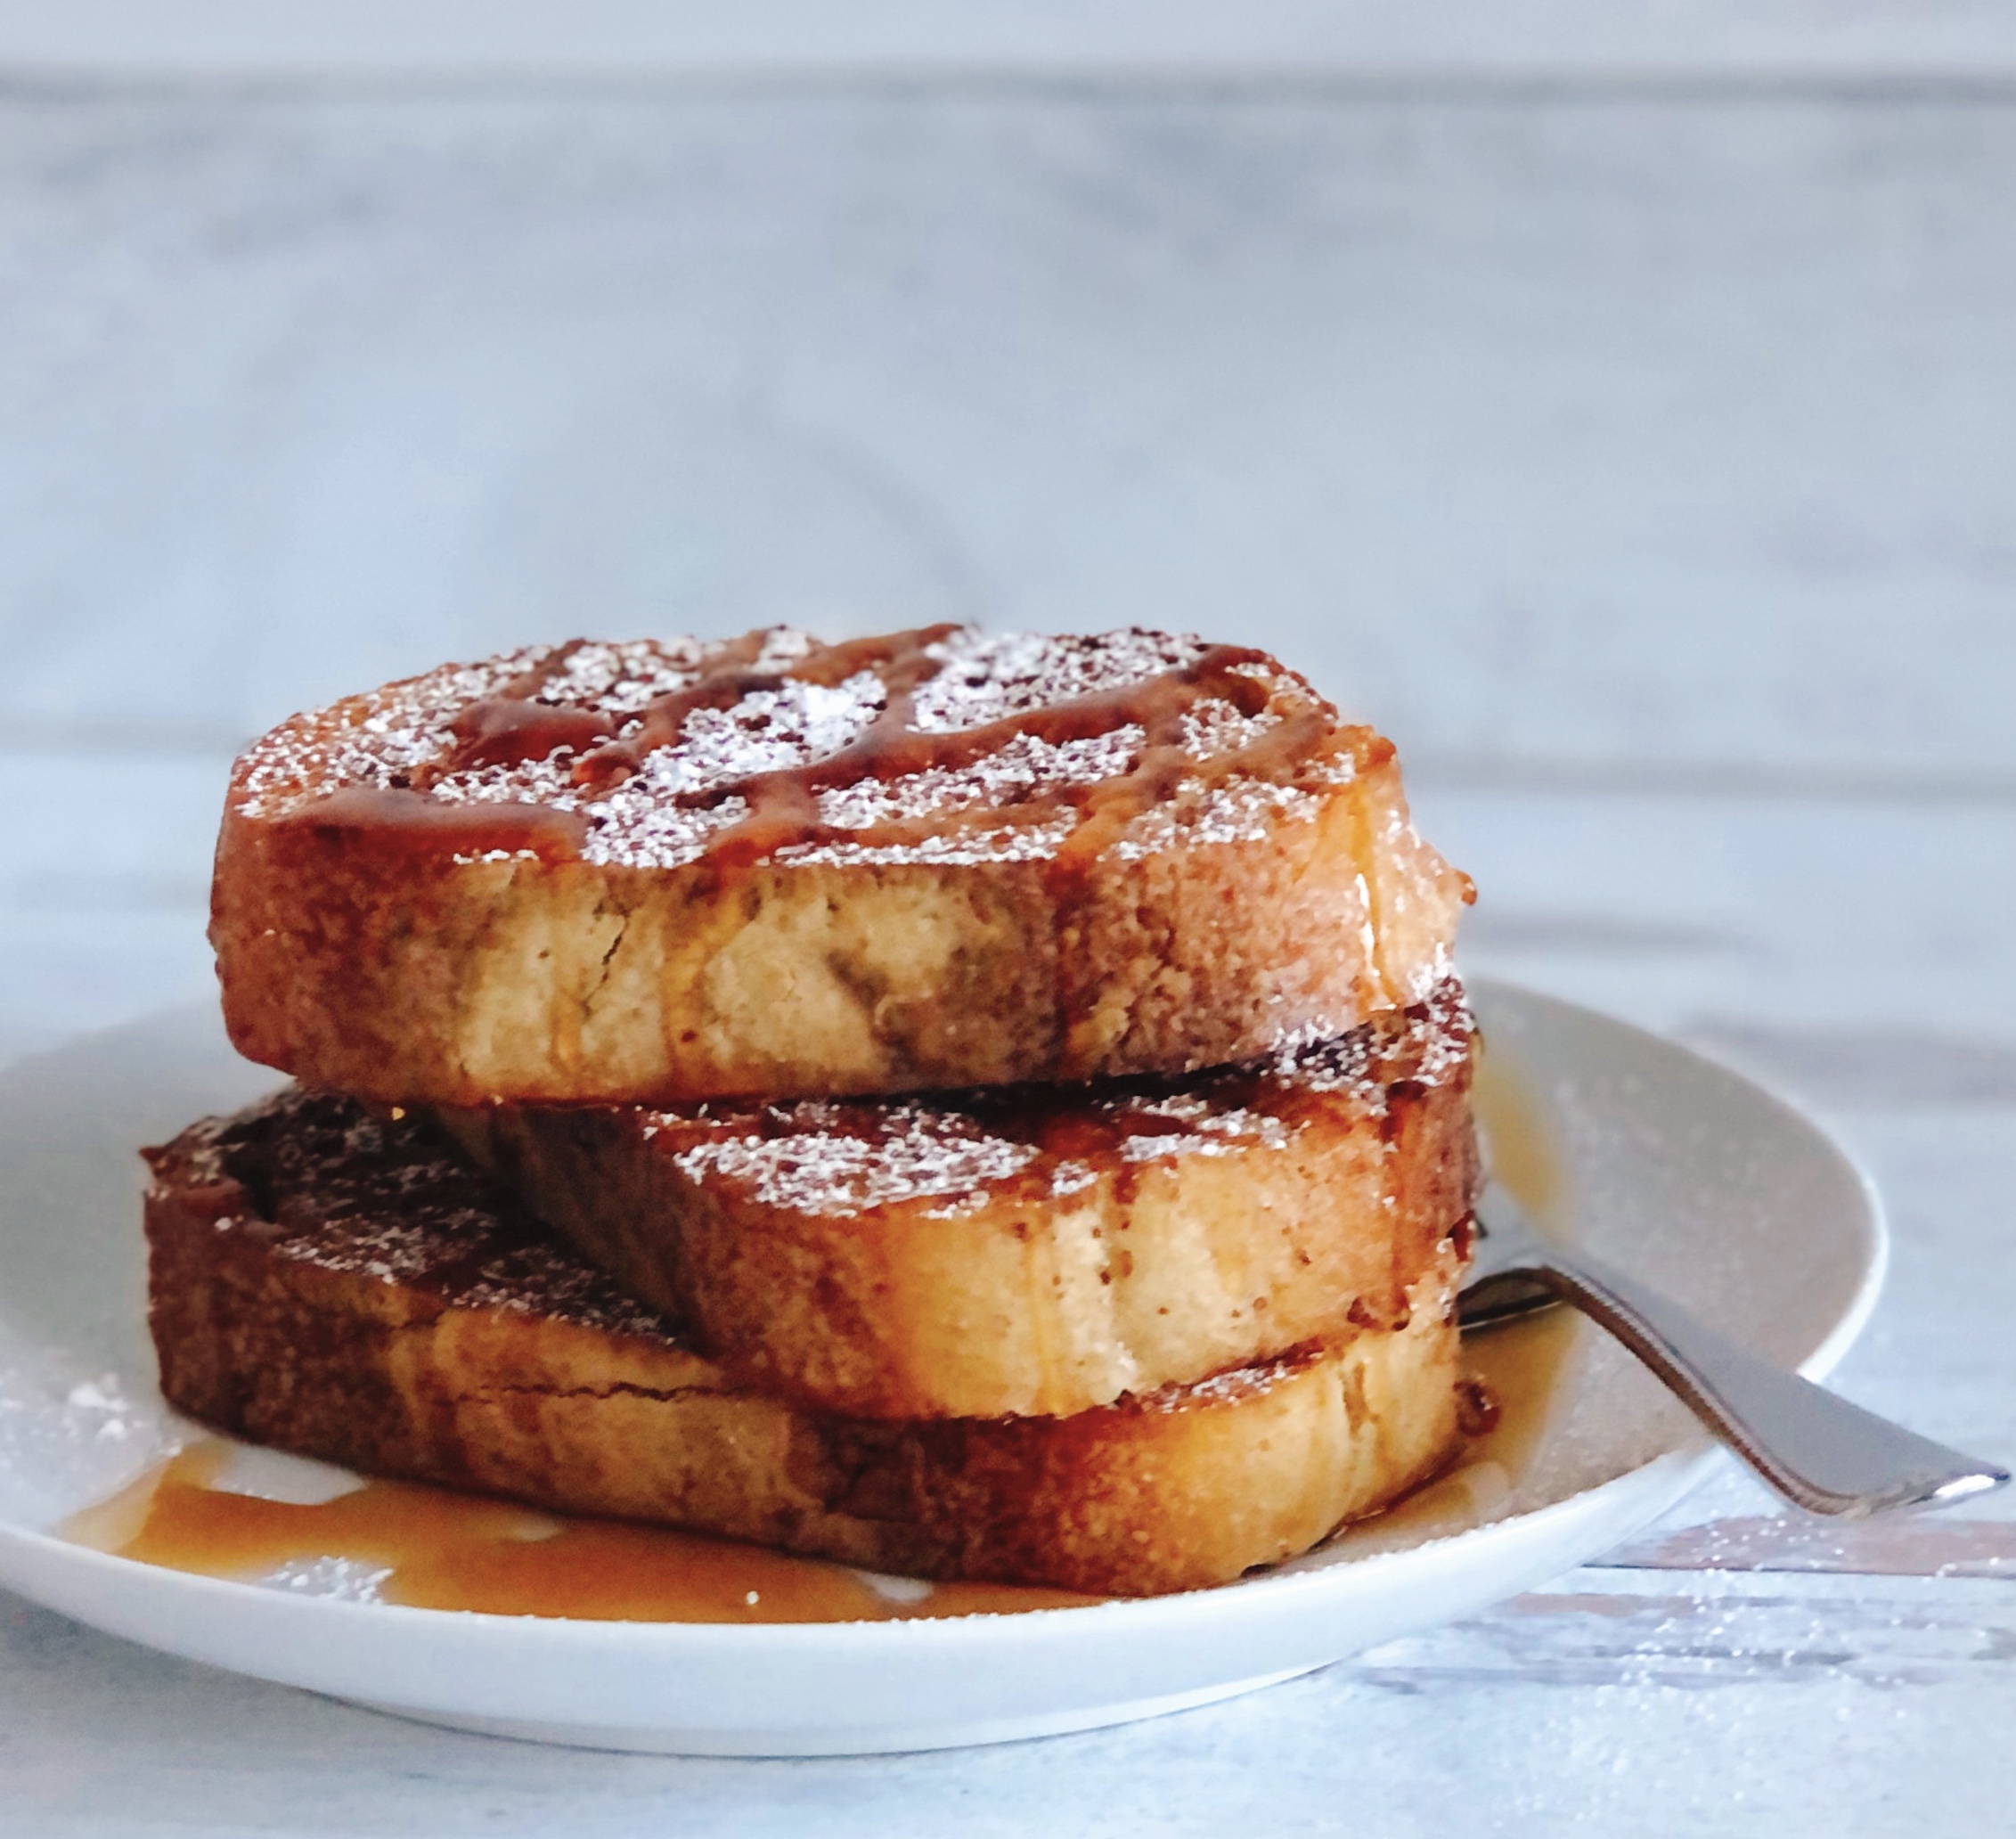 Sheet Pan French Toast – Modern Honey